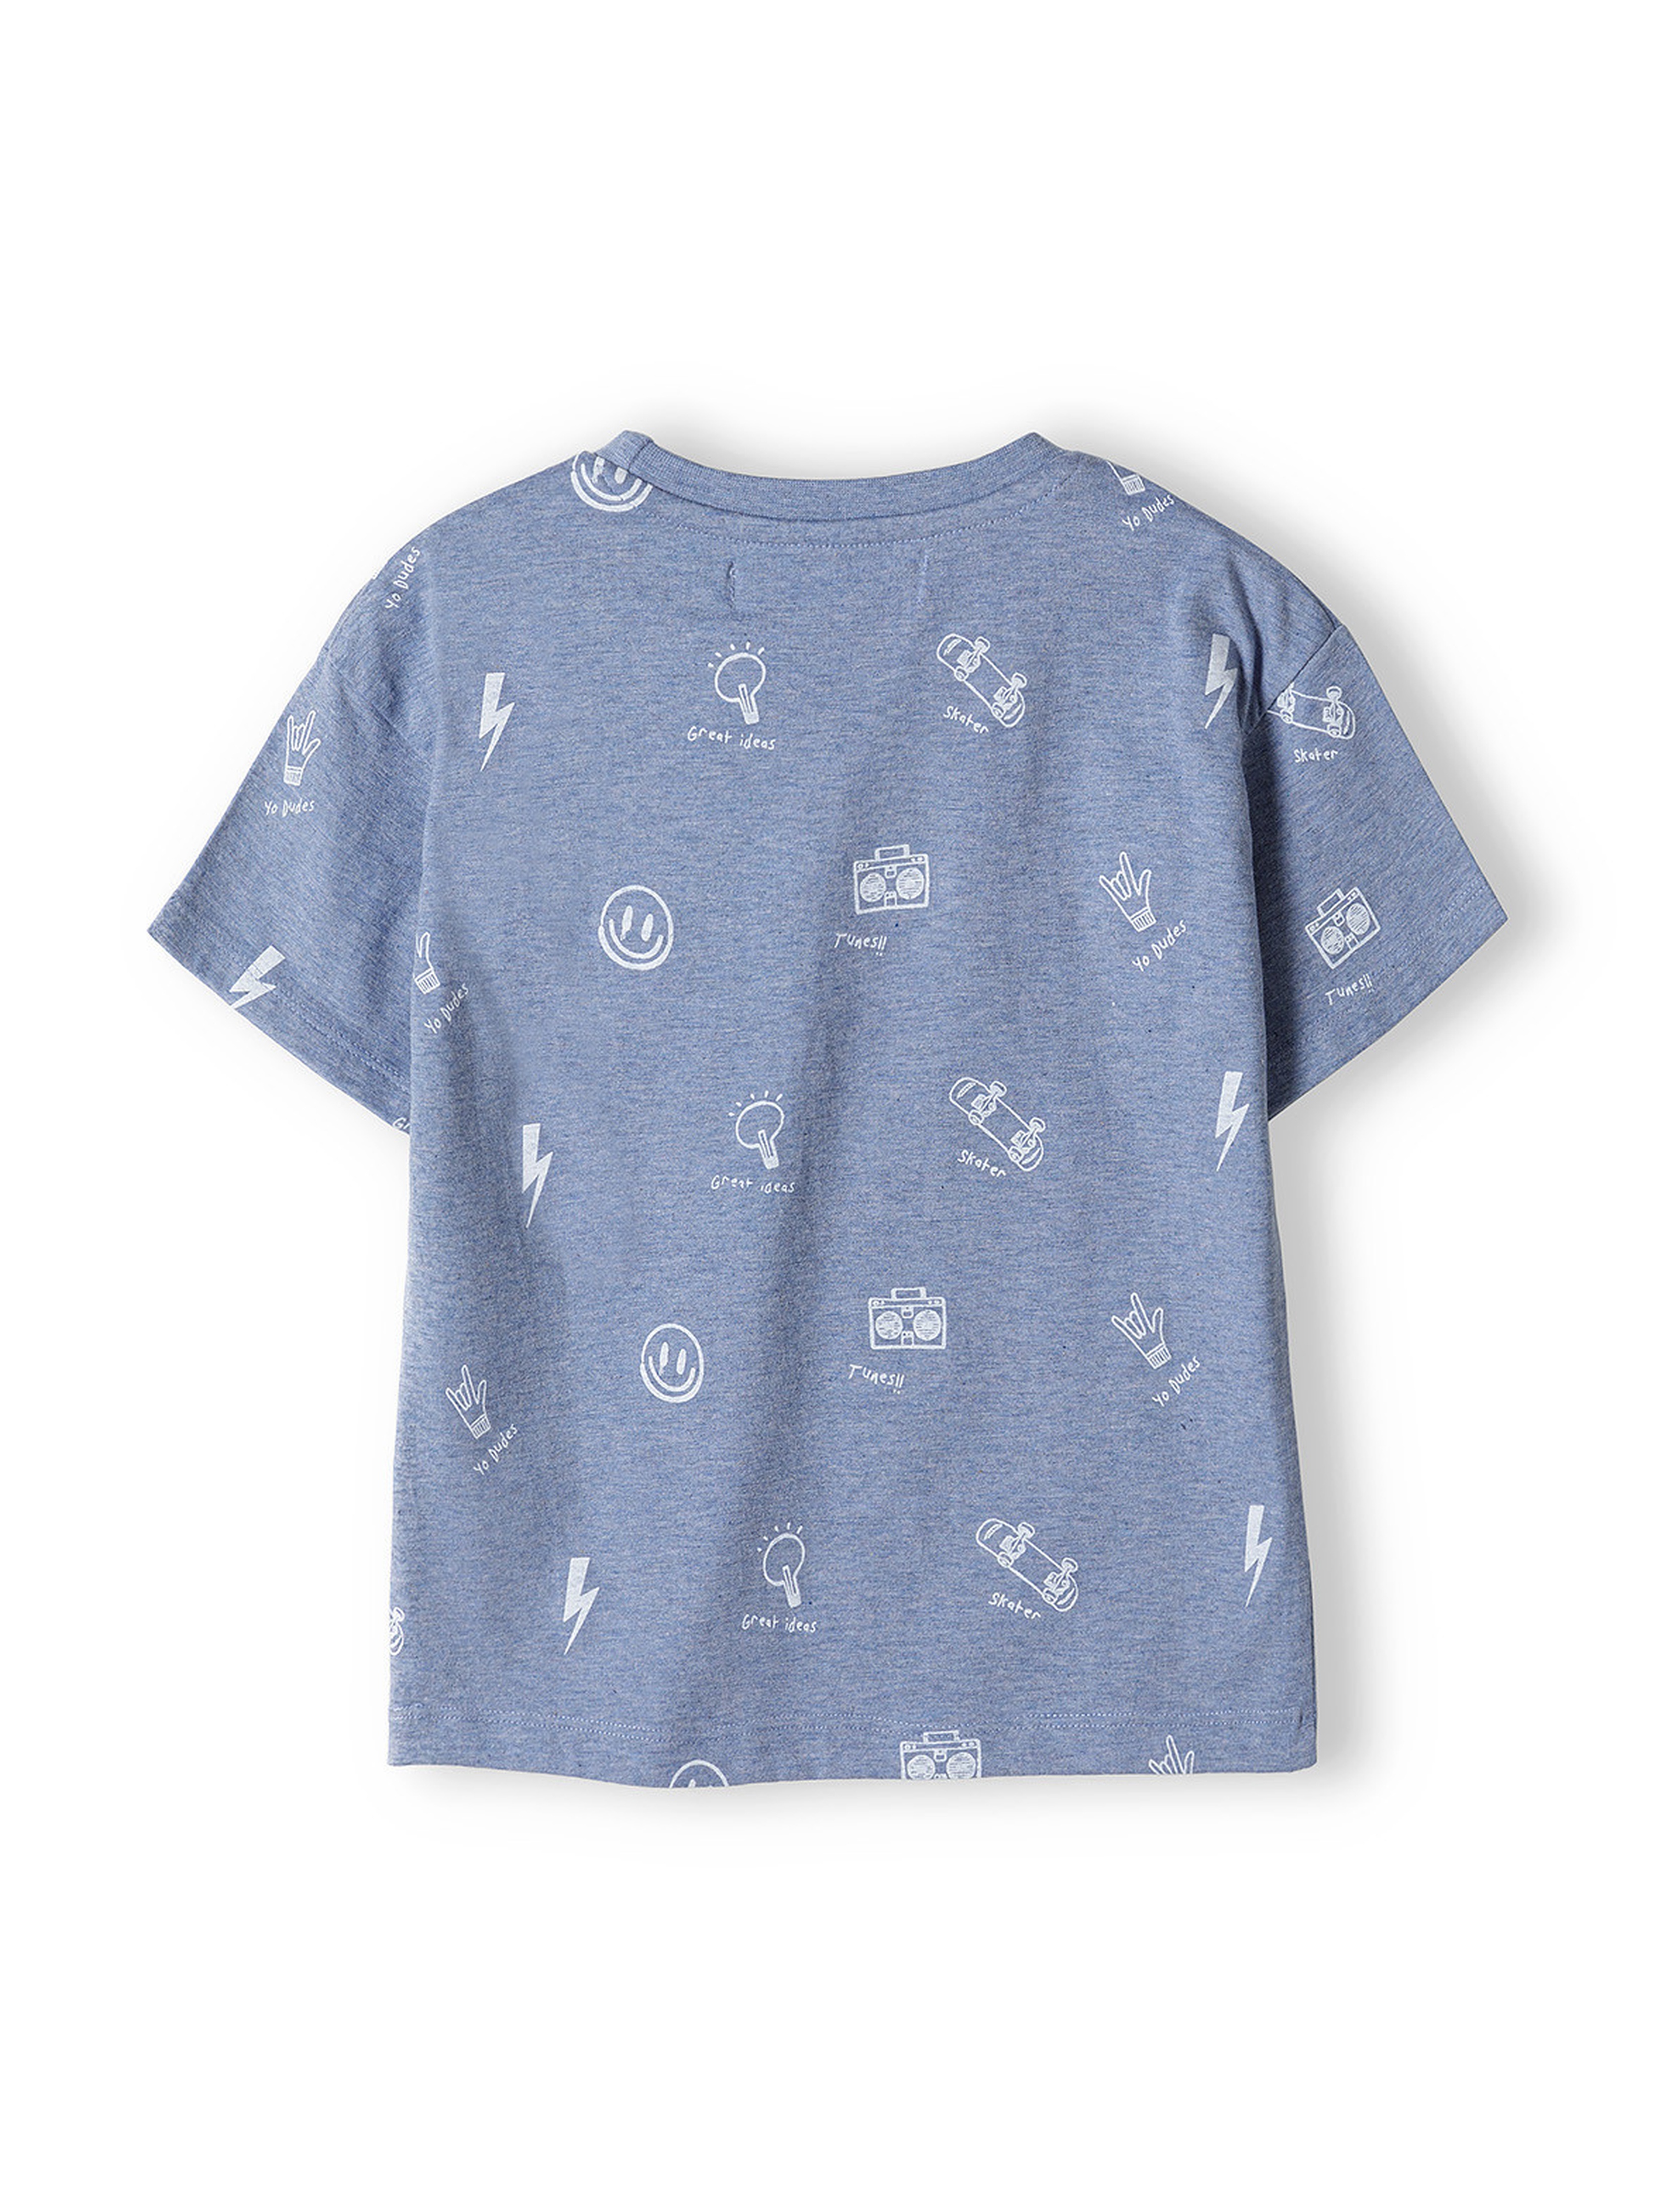 Niebieski t-shirt z dzianiny dla chłopca- Chillout